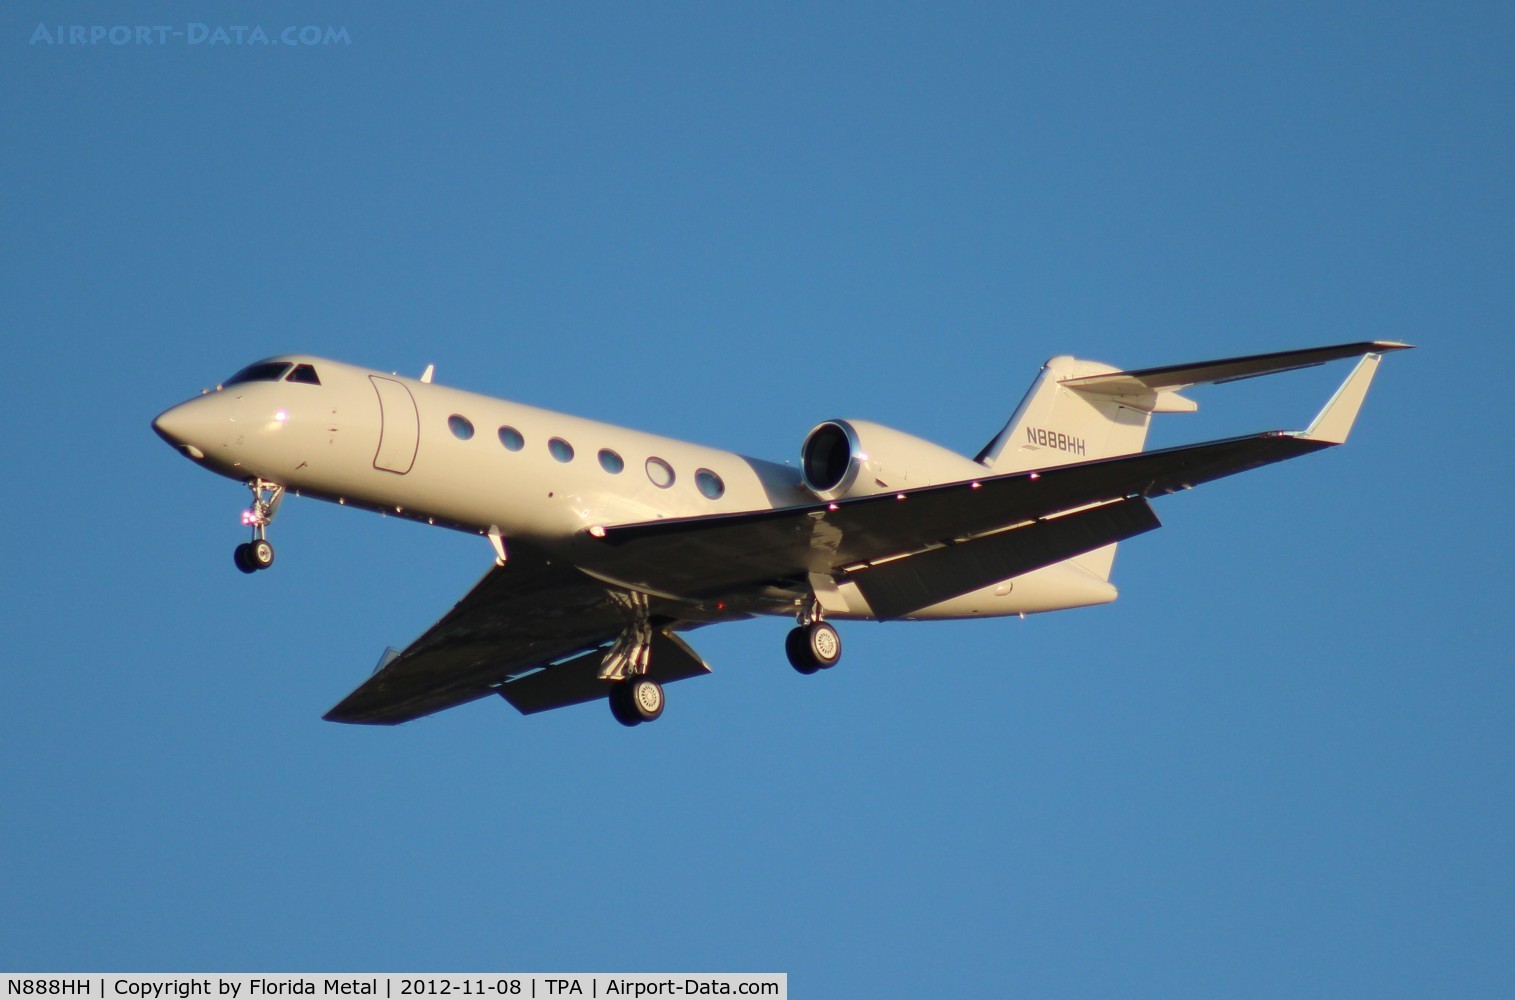 N888HH, 2005 Gulfstream Aerospace GIV-X (G450) C/N 4029, Gulfstream 450